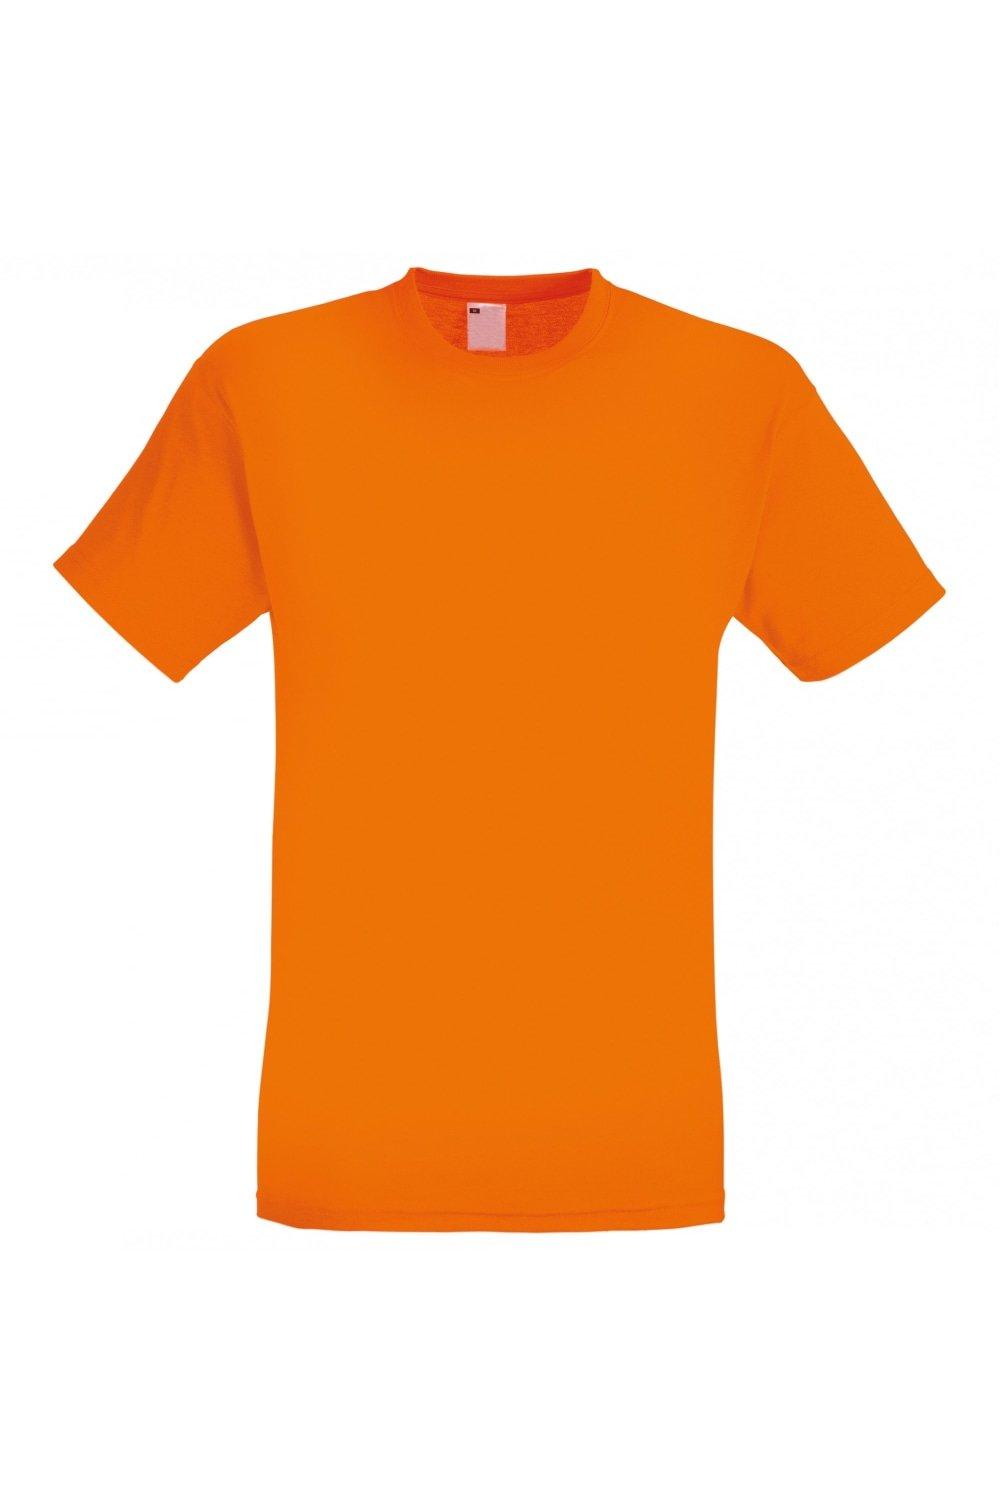 Повседневная футболка с коротким рукавом Universal Textiles, оранжевый мужская футболка ретро кассета 2xl серый меланж